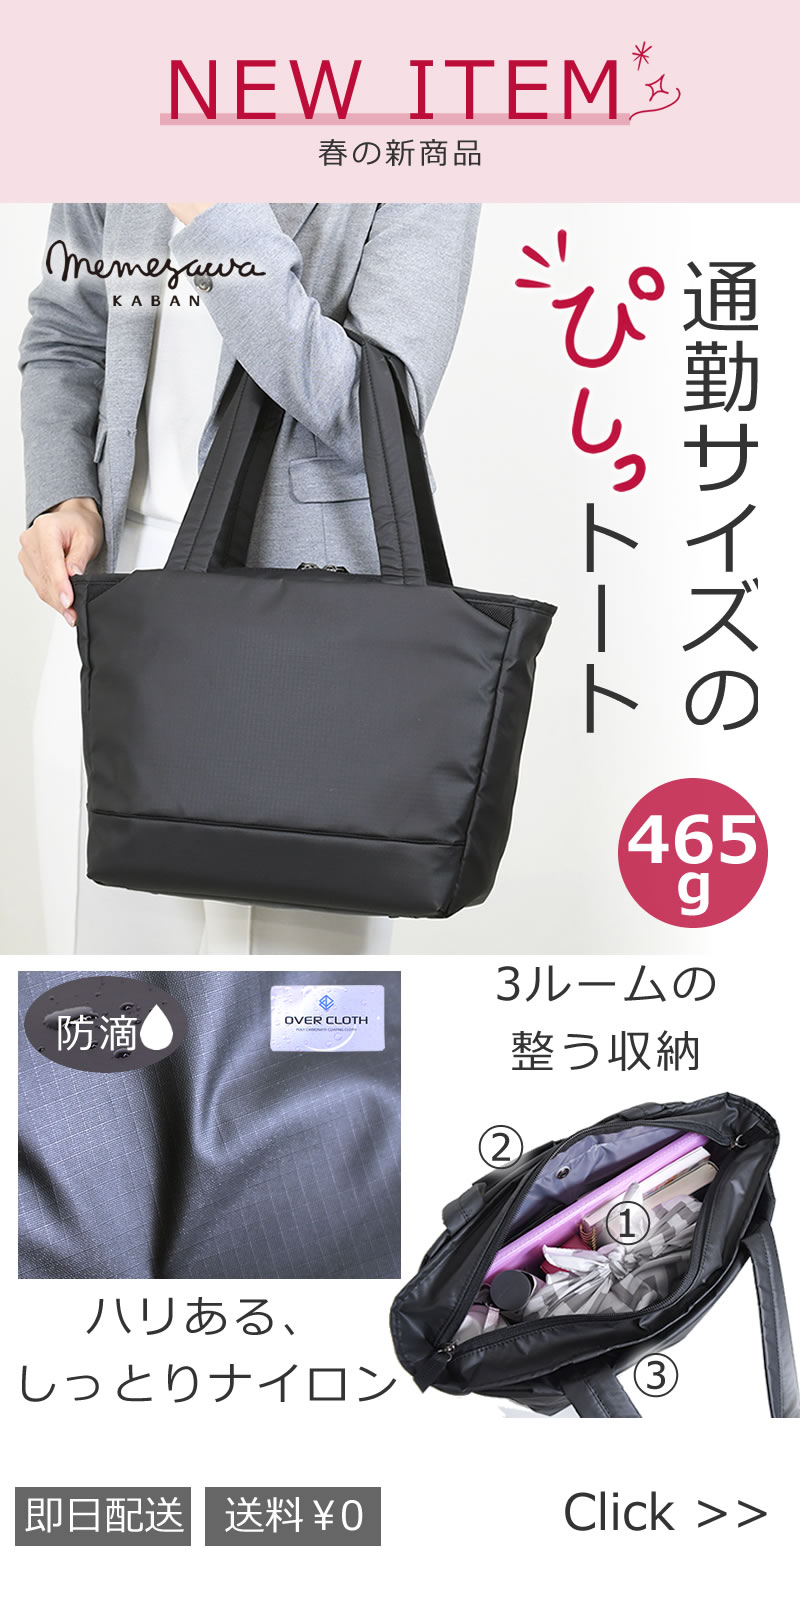 memezawakaban(目々澤鞄)春の新商品 高機能ナイロンシリーズ オンオフ使えるA4トートバッグ マットな黒がオシャレsk2021l